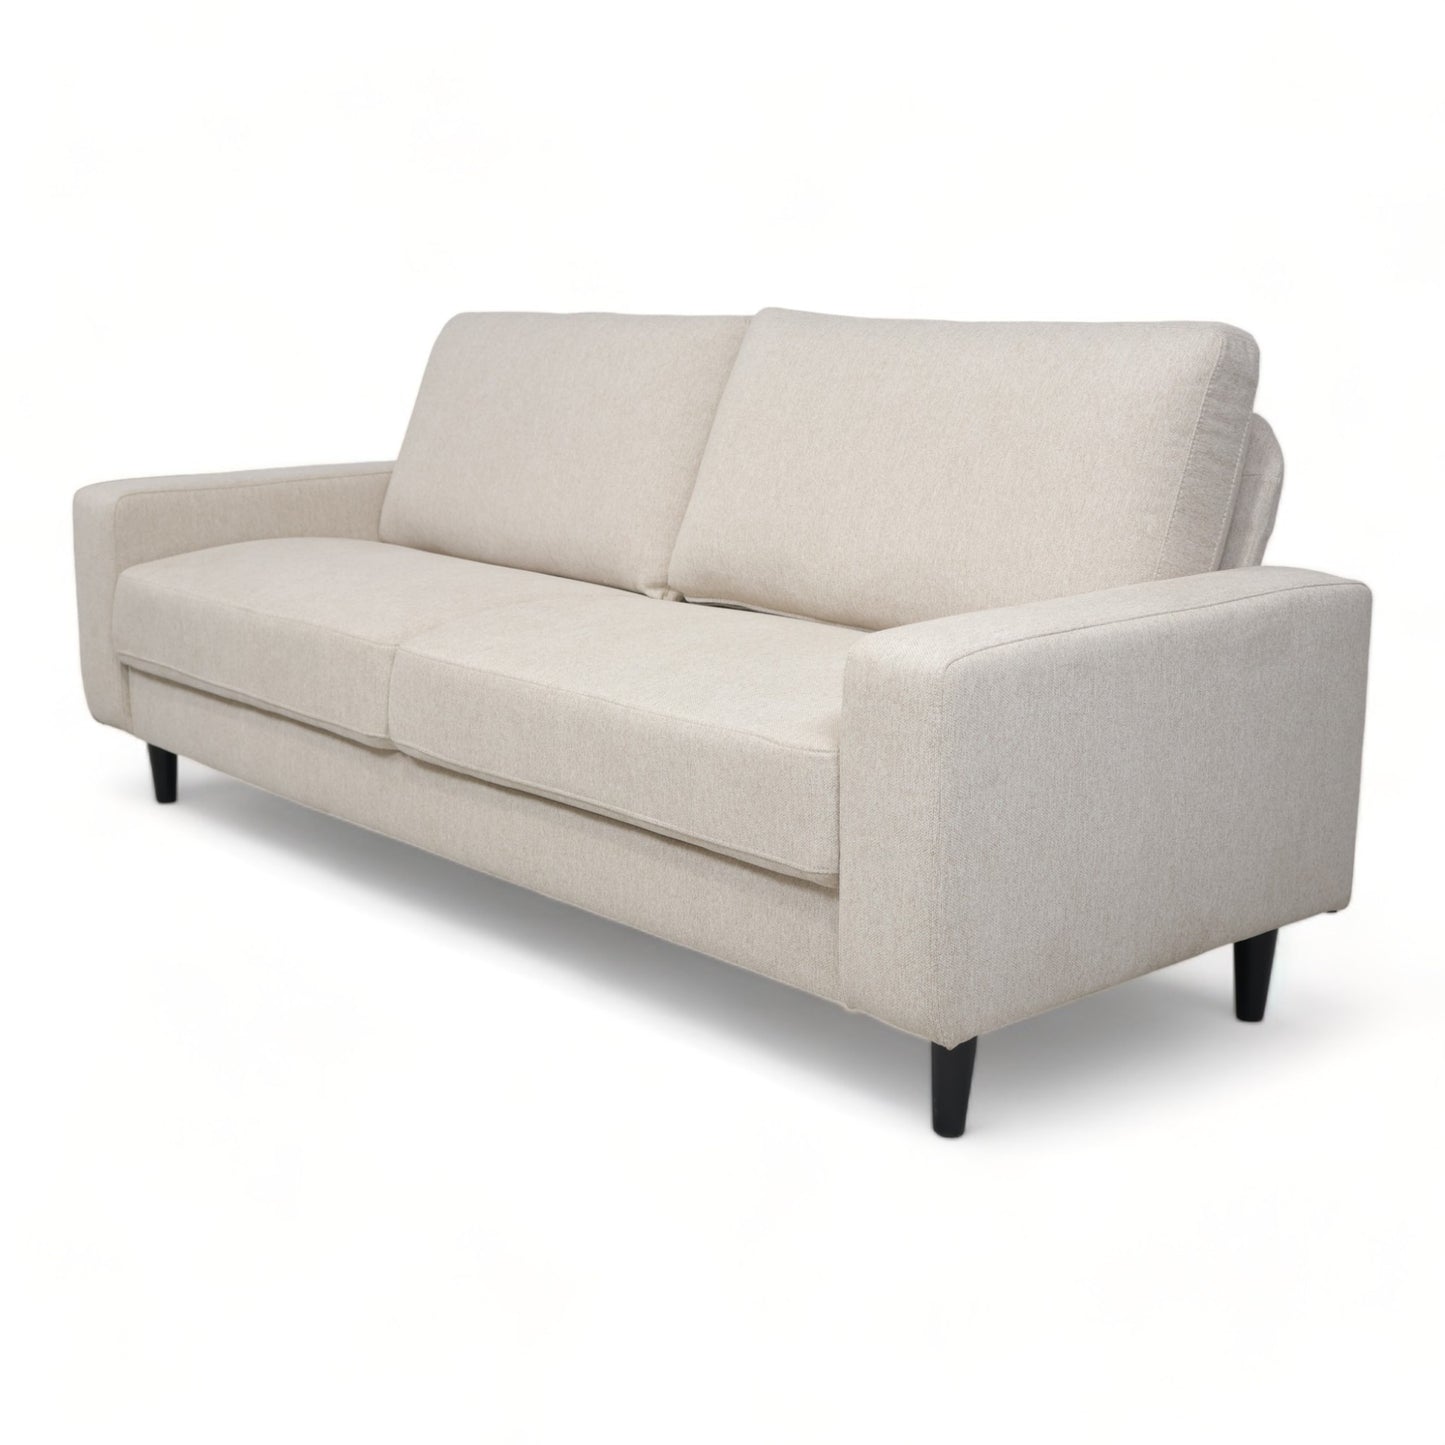 Nyrenset | Beige Etta 3-seter sofa fra A-Møbler